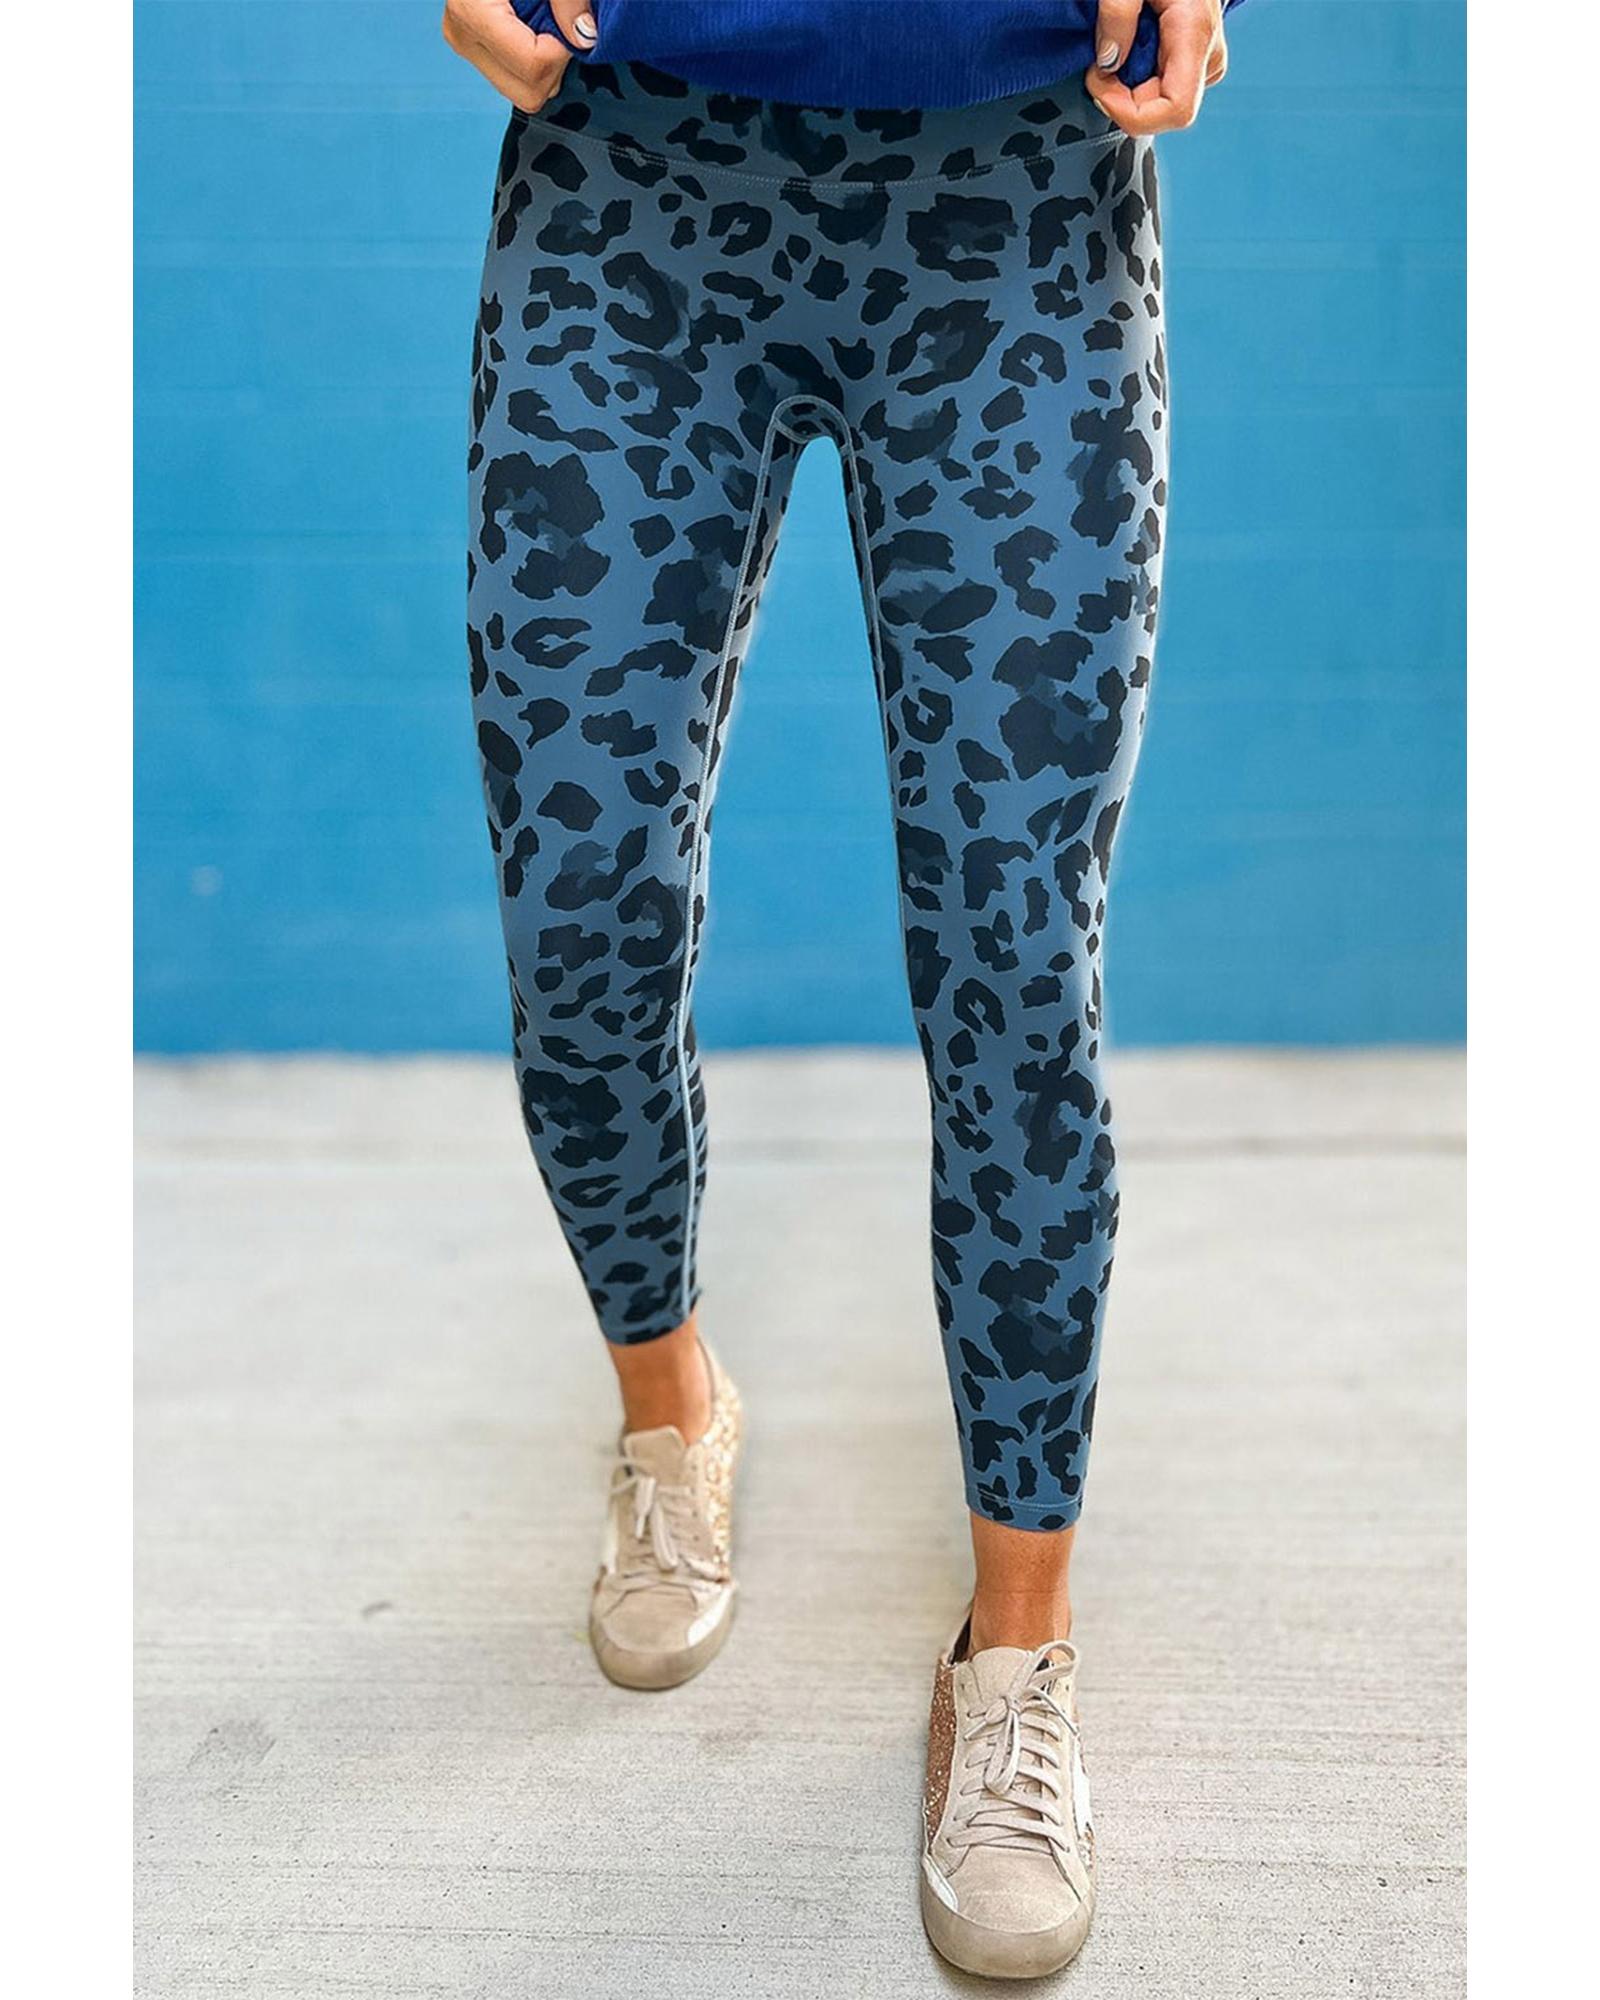 Leopard Print Active Leggings - M